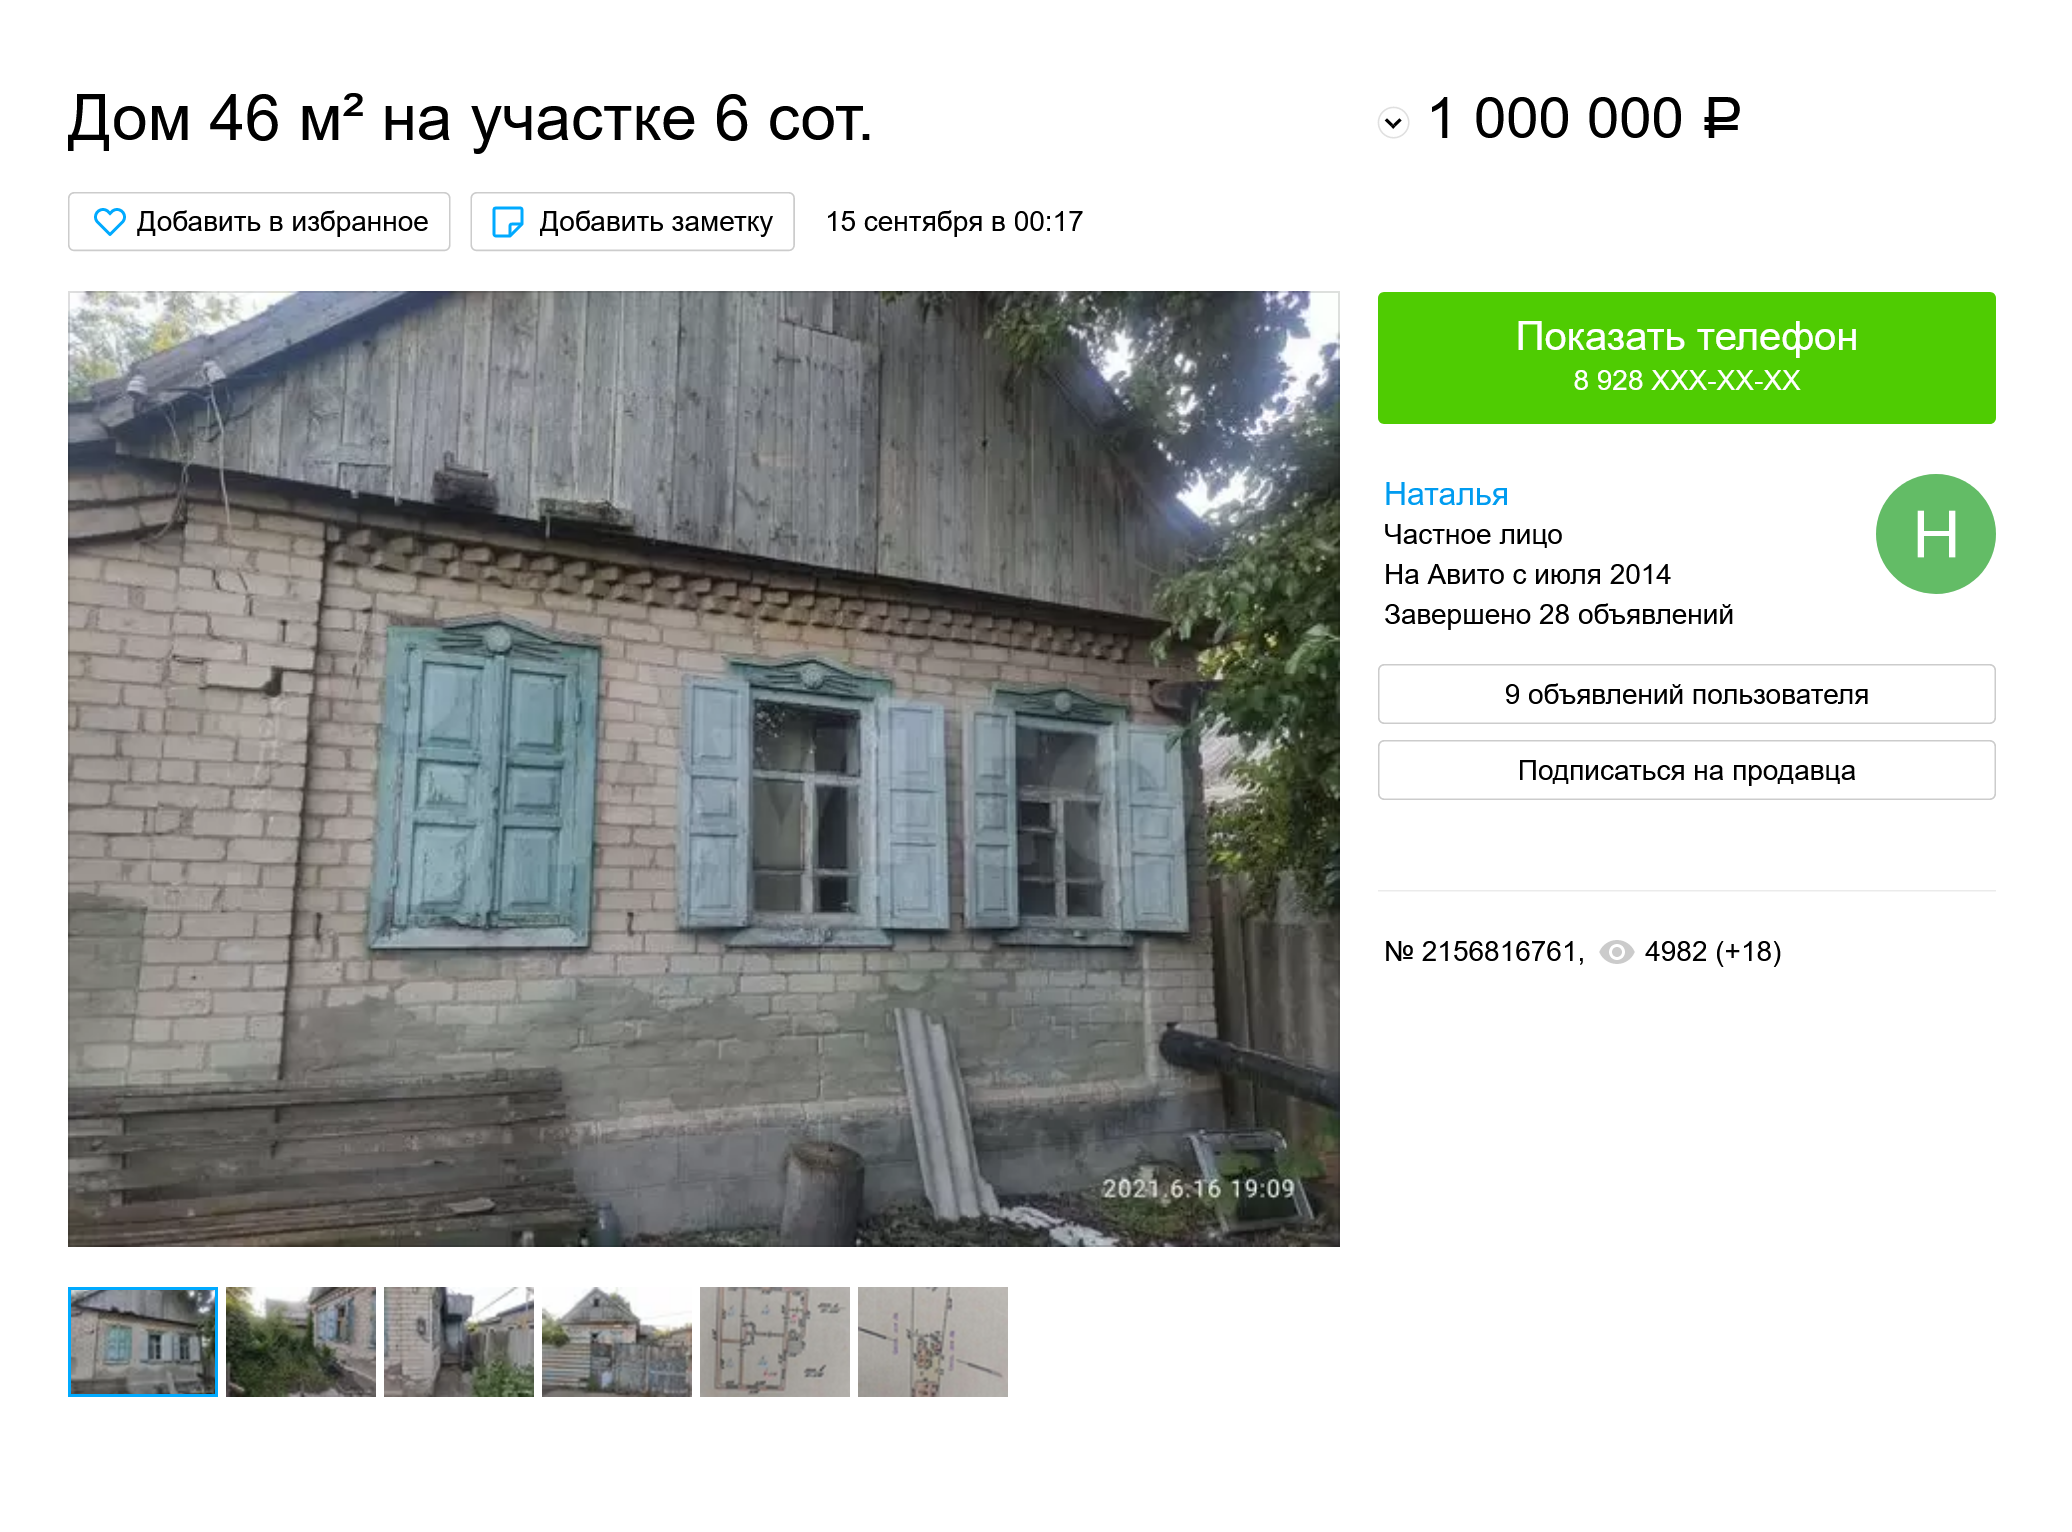 Старенький дом в центре Невинномысска продают за 1 млн рублей